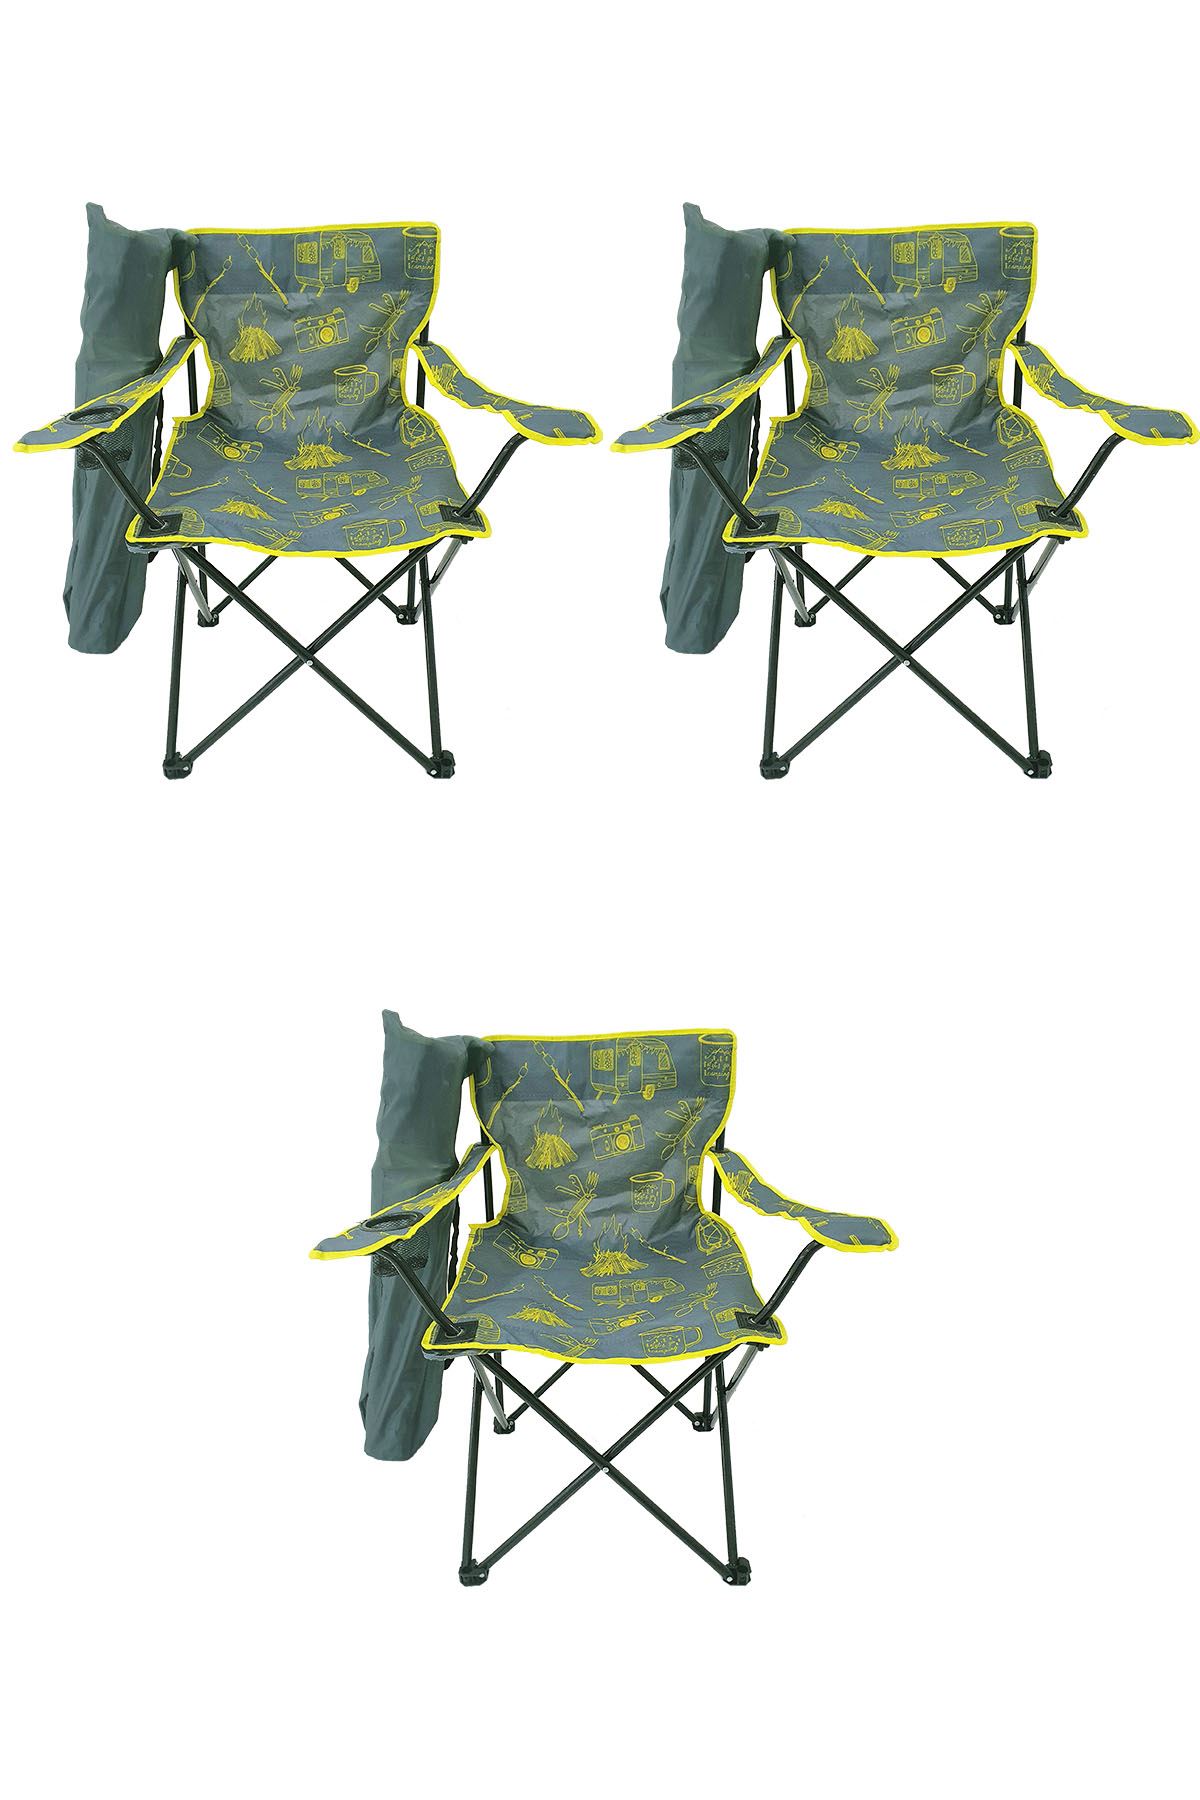 Bofigo 3 Adet Kamp Sandalyesi Katlanır Sandalye Bahçe Koltuğu Piknik Plaj Sandalyesi Desenli Gri